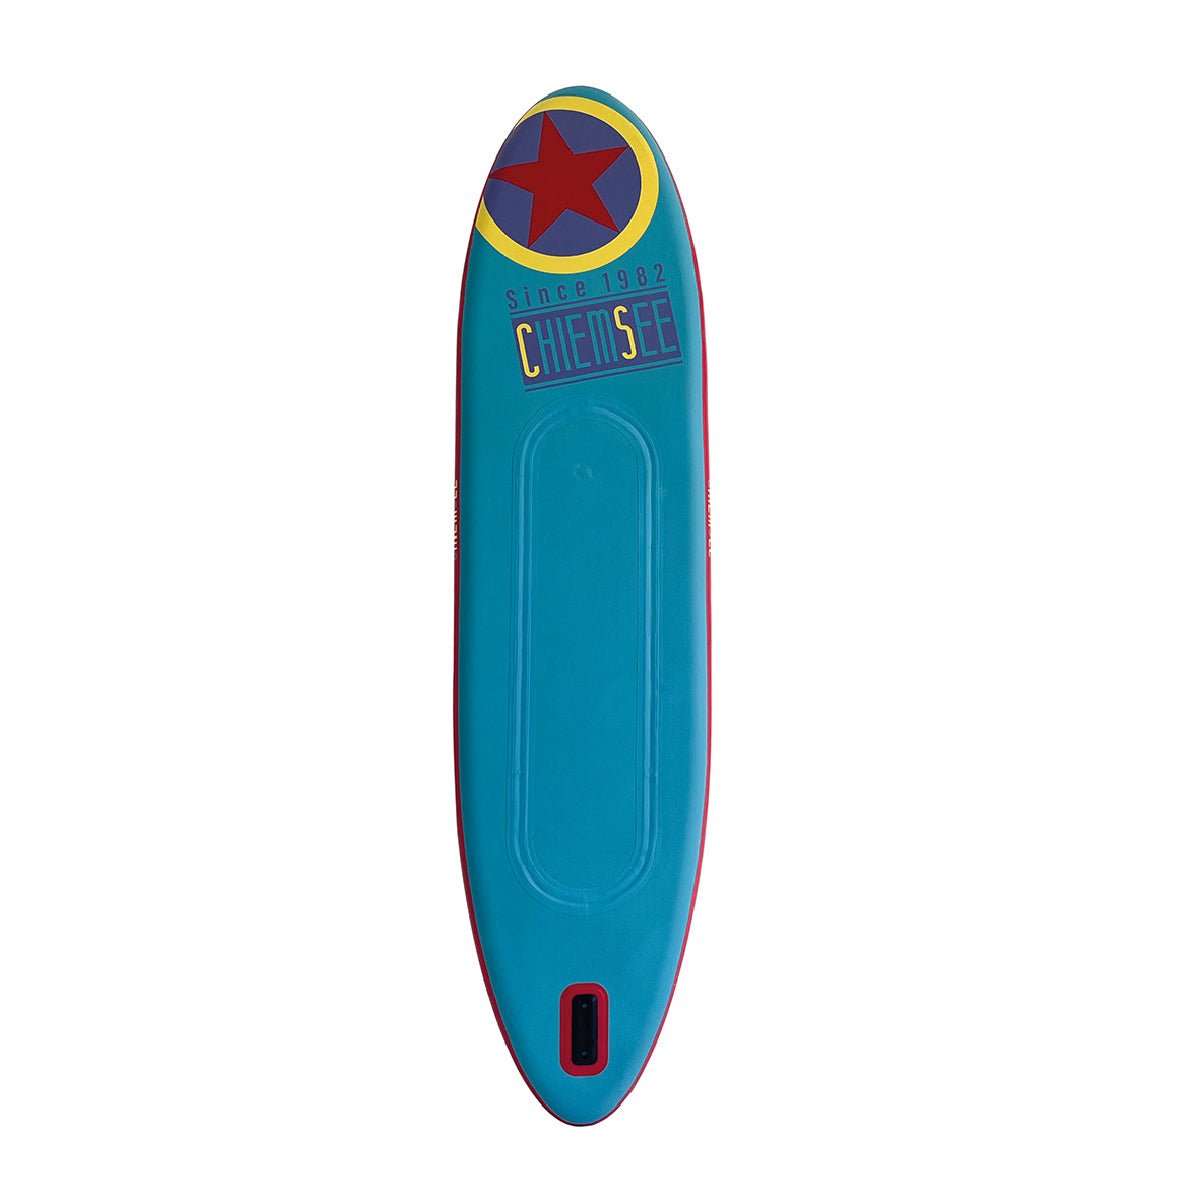 Chiemsee SUP-Set inkl. Board, Paddel, Pumpe, Leash & Rucksack (gelb/blau) - Poolpirat